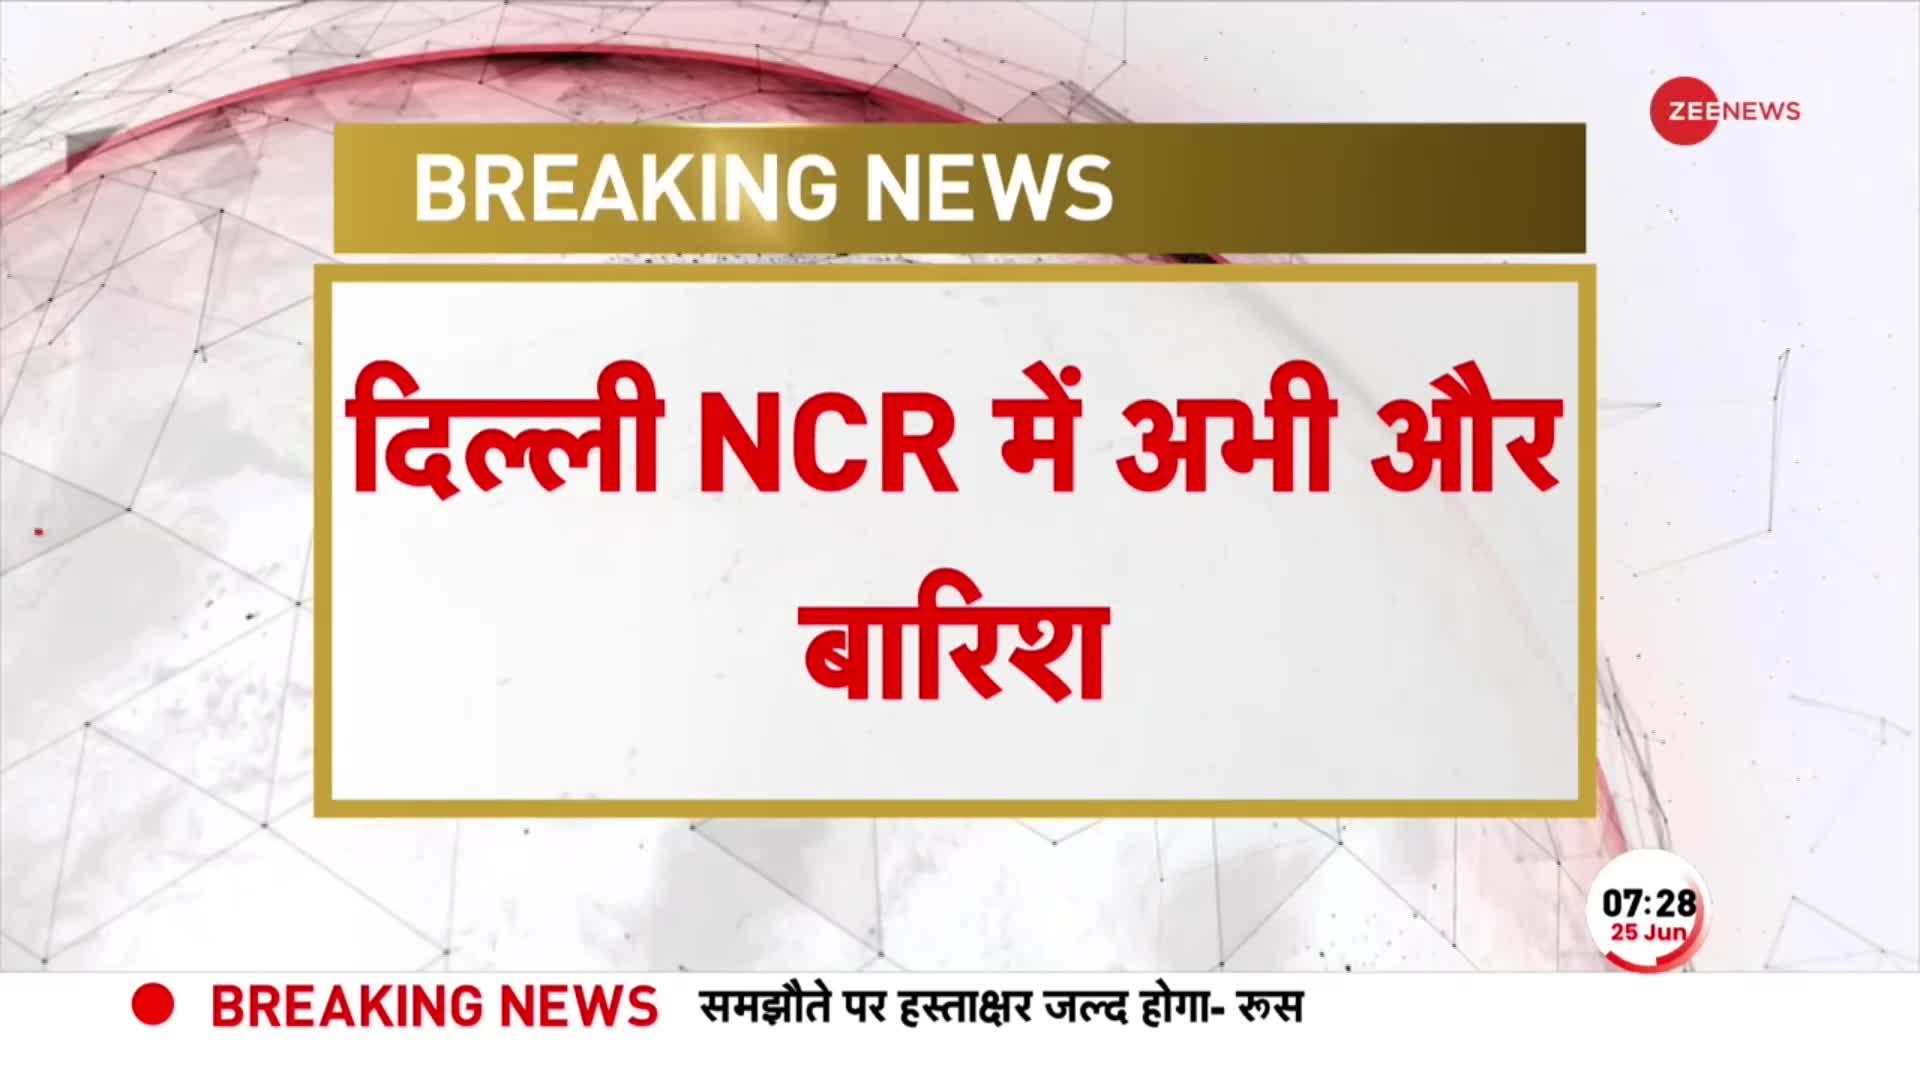 Delhi NCR Rain Alert: तेज हवाओं के साथ झमाझम बारिश, मौसम विभाग ने जारी किया अलर्ट